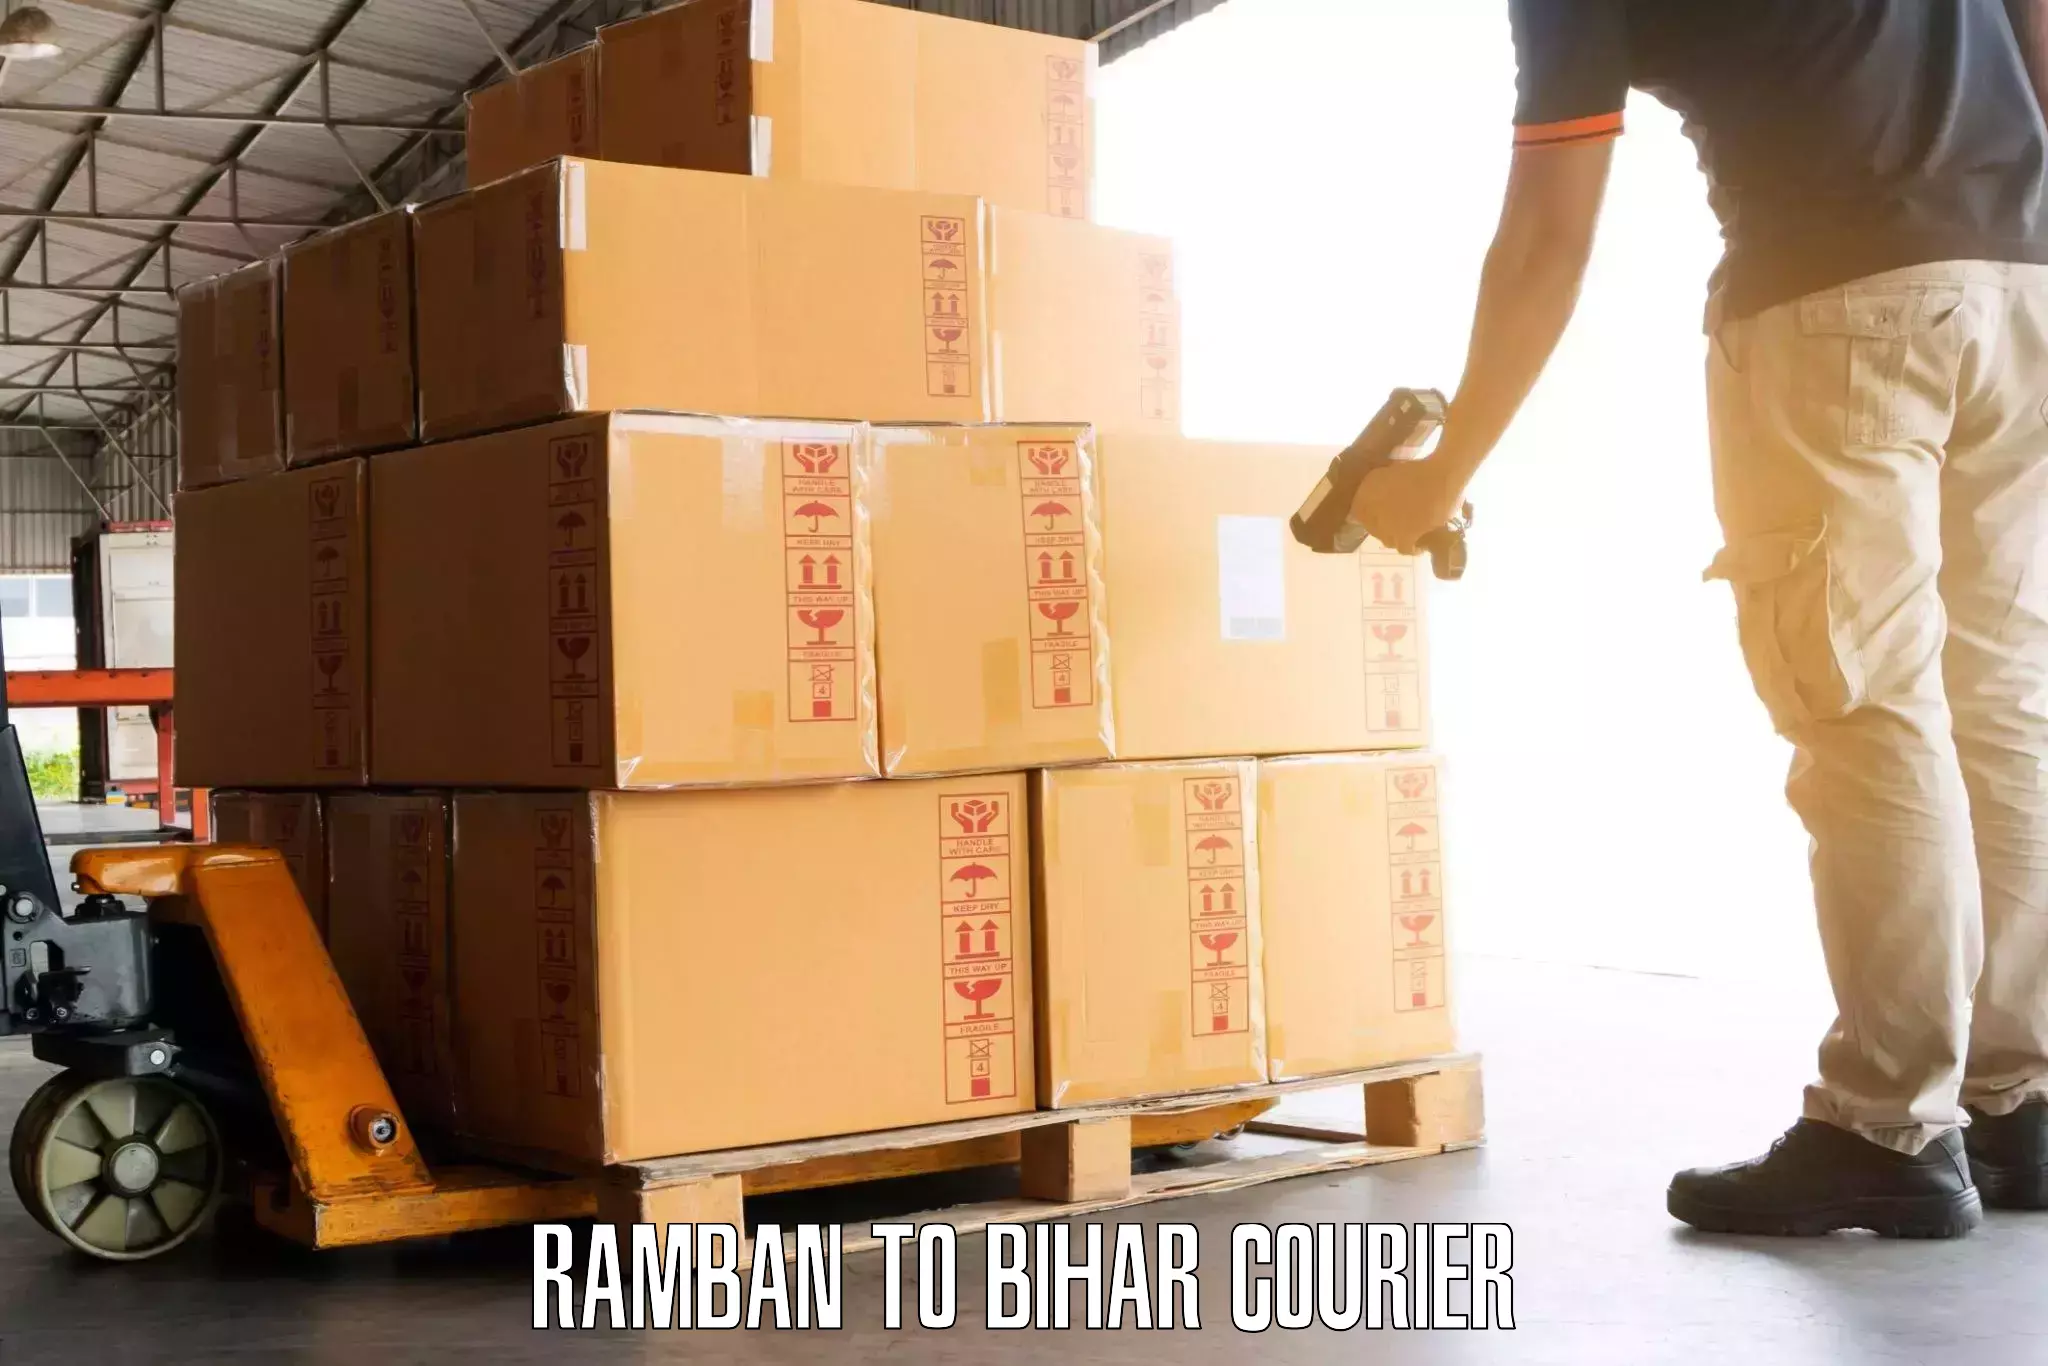 Baggage handling services Ramban to Piro